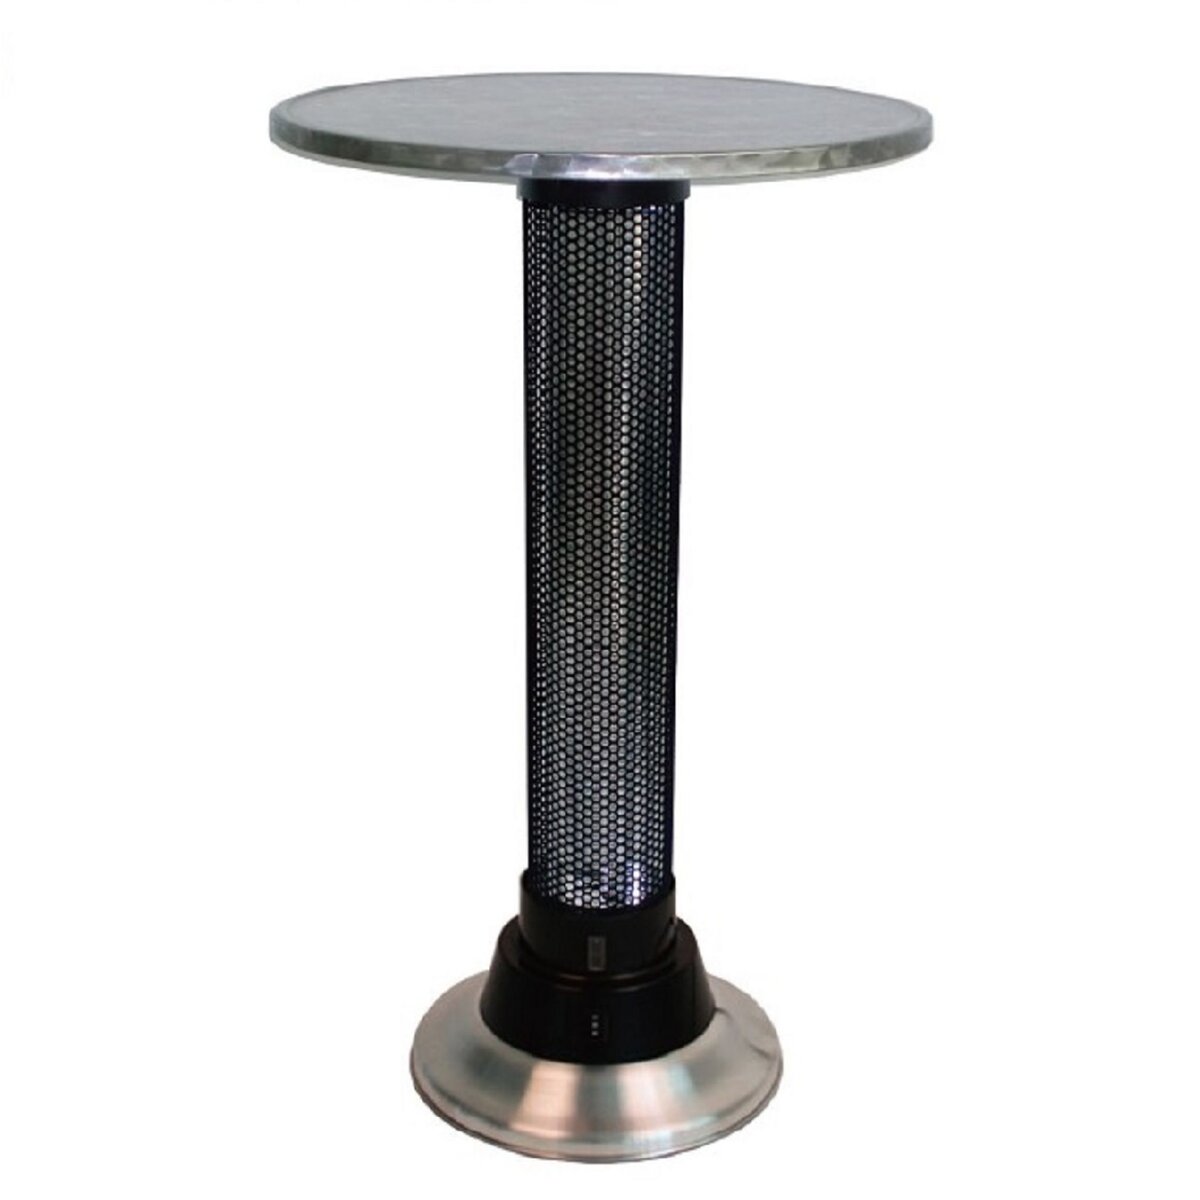 FAVEX Table chauffante électrique avec détecteur de présence SENSOR